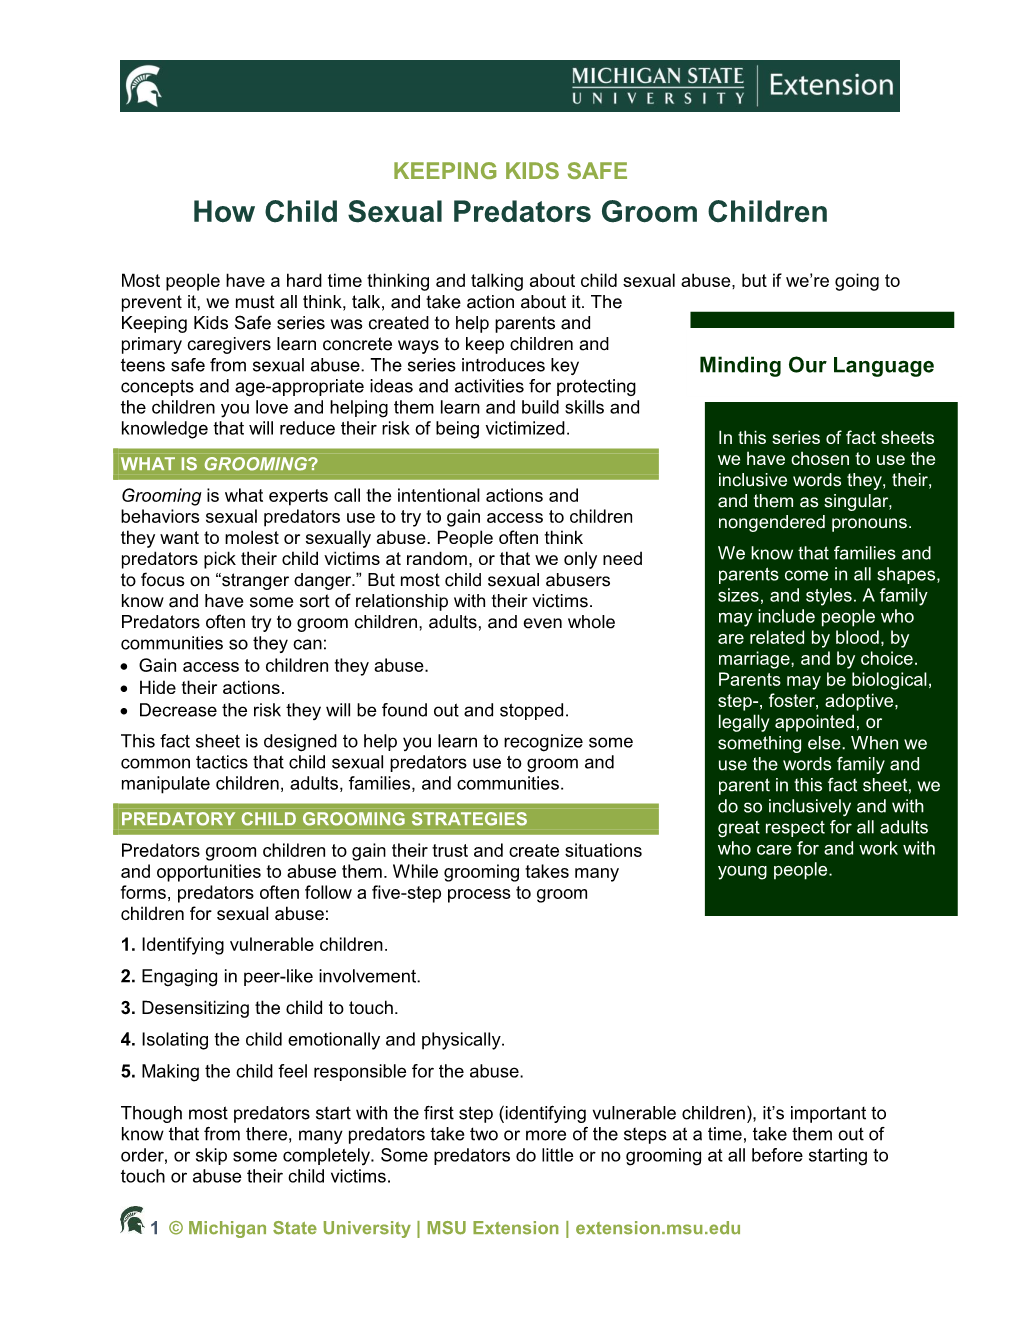 How Child Sexual Predators Groom Children